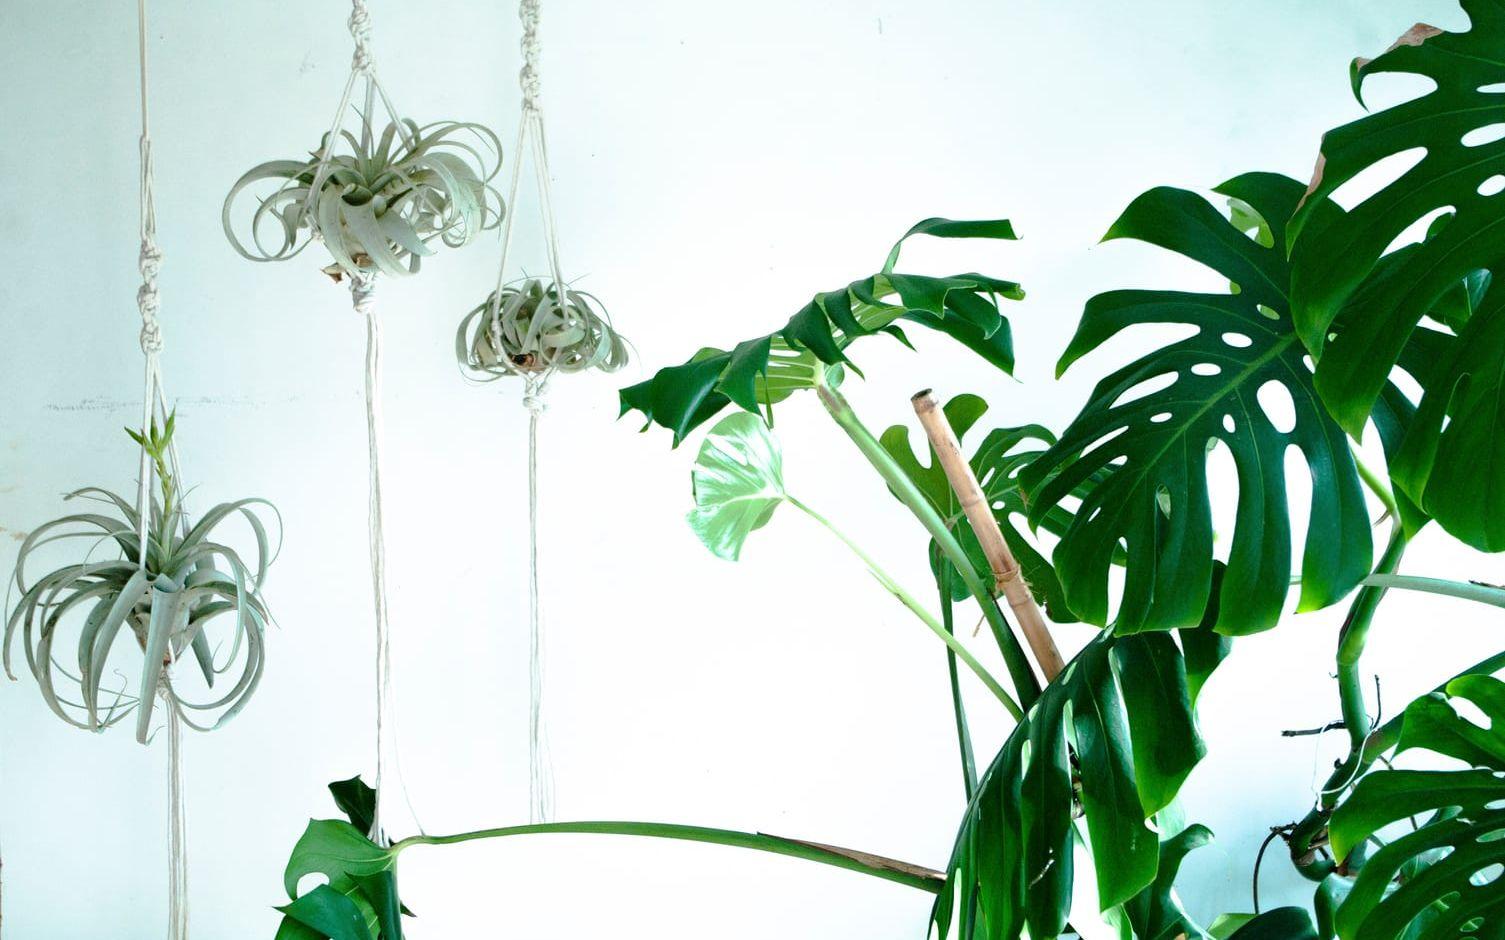 Luftplantorna blir enkelt till snygga inredningsdetaljer om man hänger upp dem. Foto: Pontus Olausson